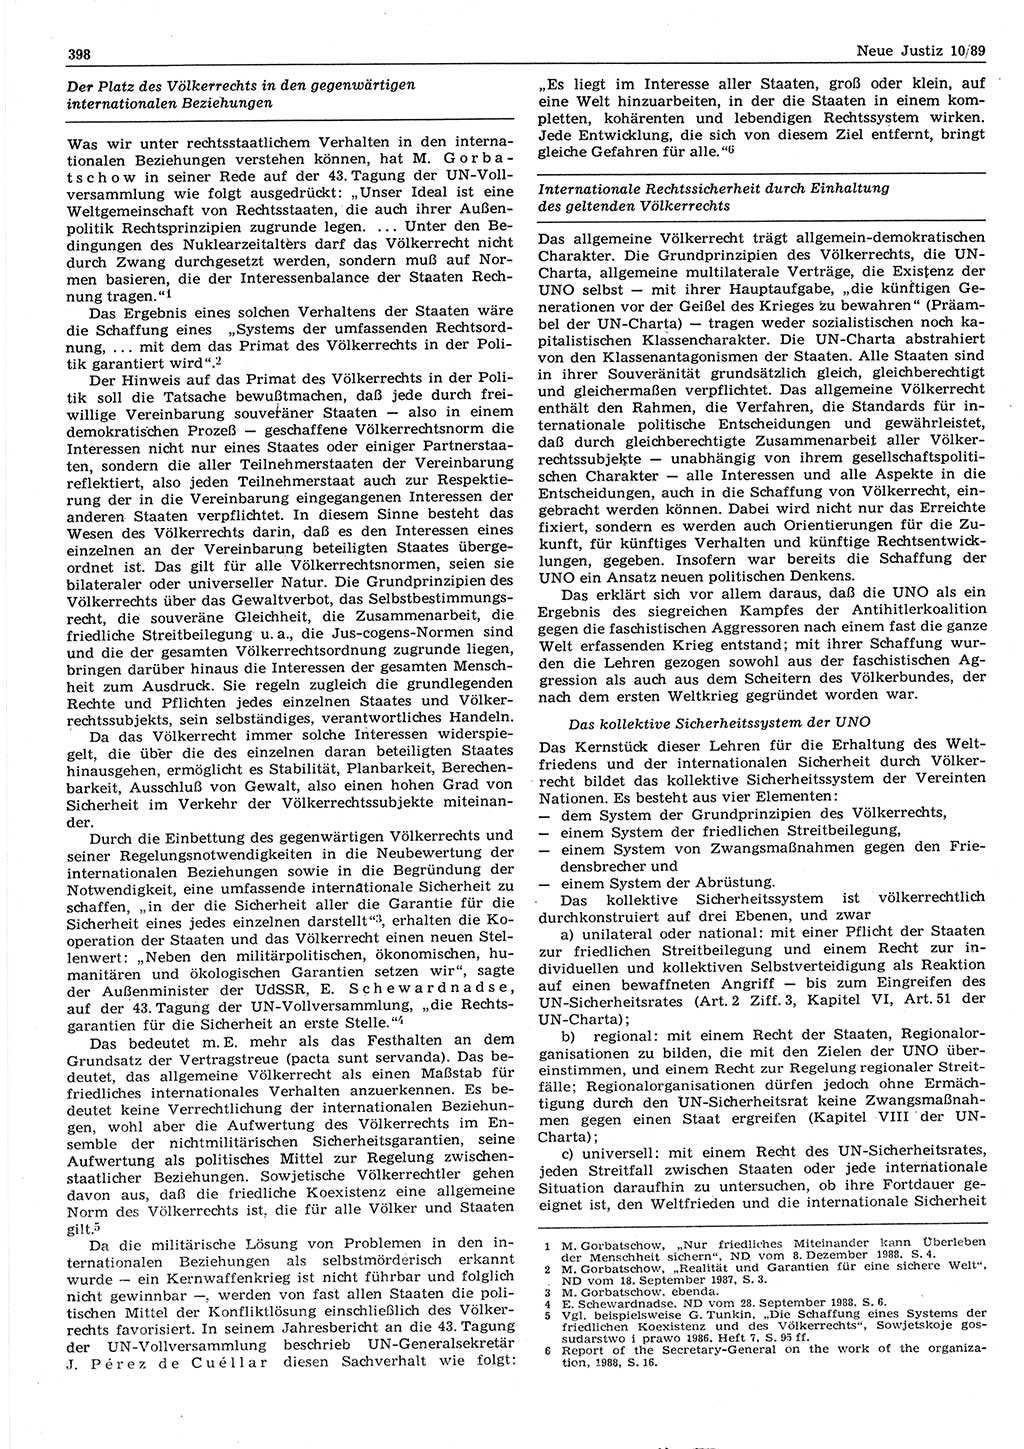 Neue Justiz (NJ), Zeitschrift für sozialistisches Recht und Gesetzlichkeit [Deutsche Demokratische Republik (DDR)], 43. Jahrgang 1989, Seite 398 (NJ DDR 1989, S. 398)